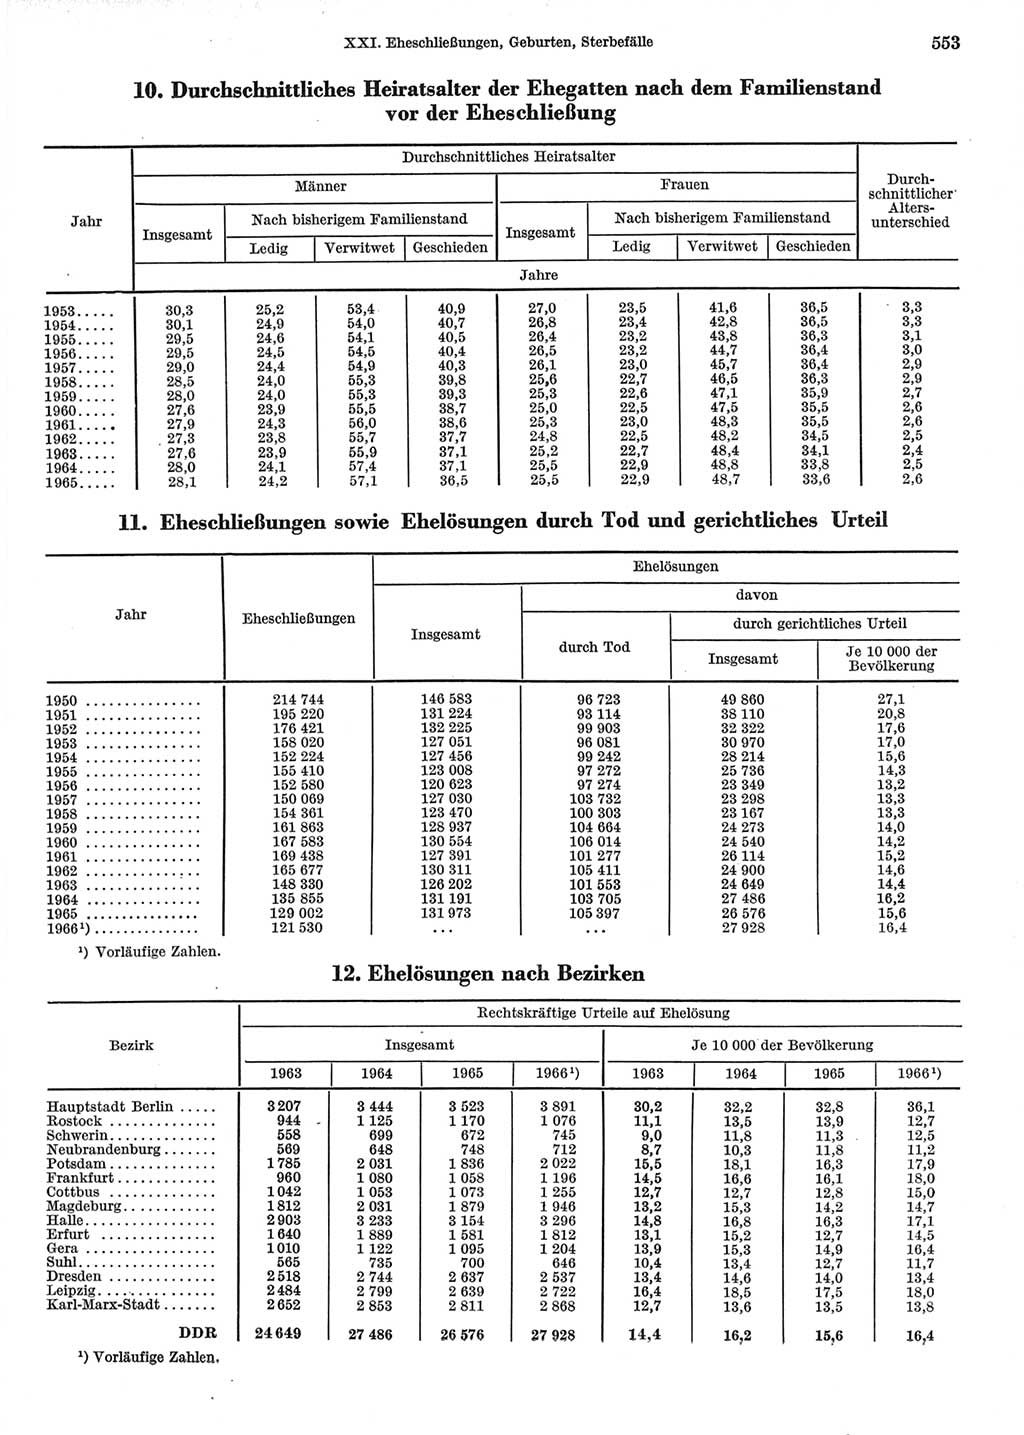 Statistisches Jahrbuch der Deutschen Demokratischen Republik (DDR) 1967, Seite 553 (Stat. Jb. DDR 1967, S. 553)